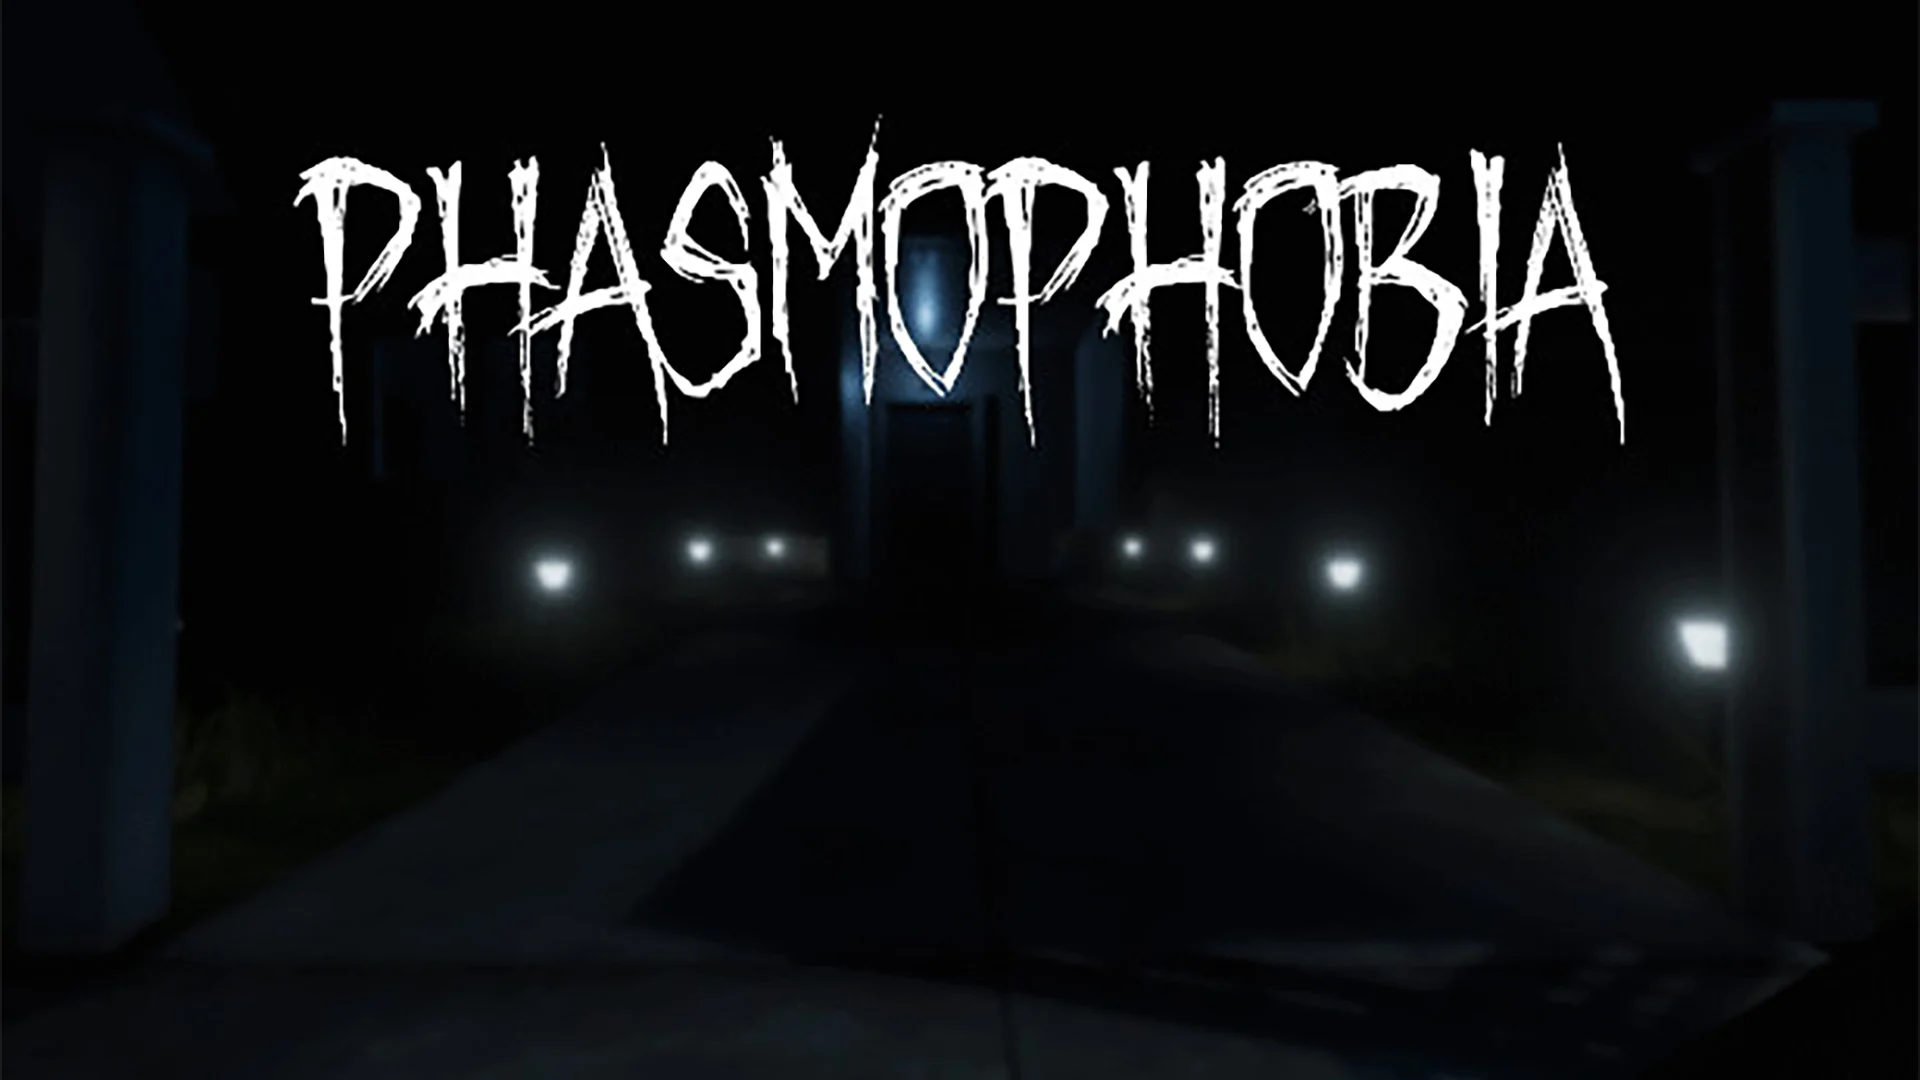 Phasmophobia Major Update v0.7.0.0 Details Gamer Digest